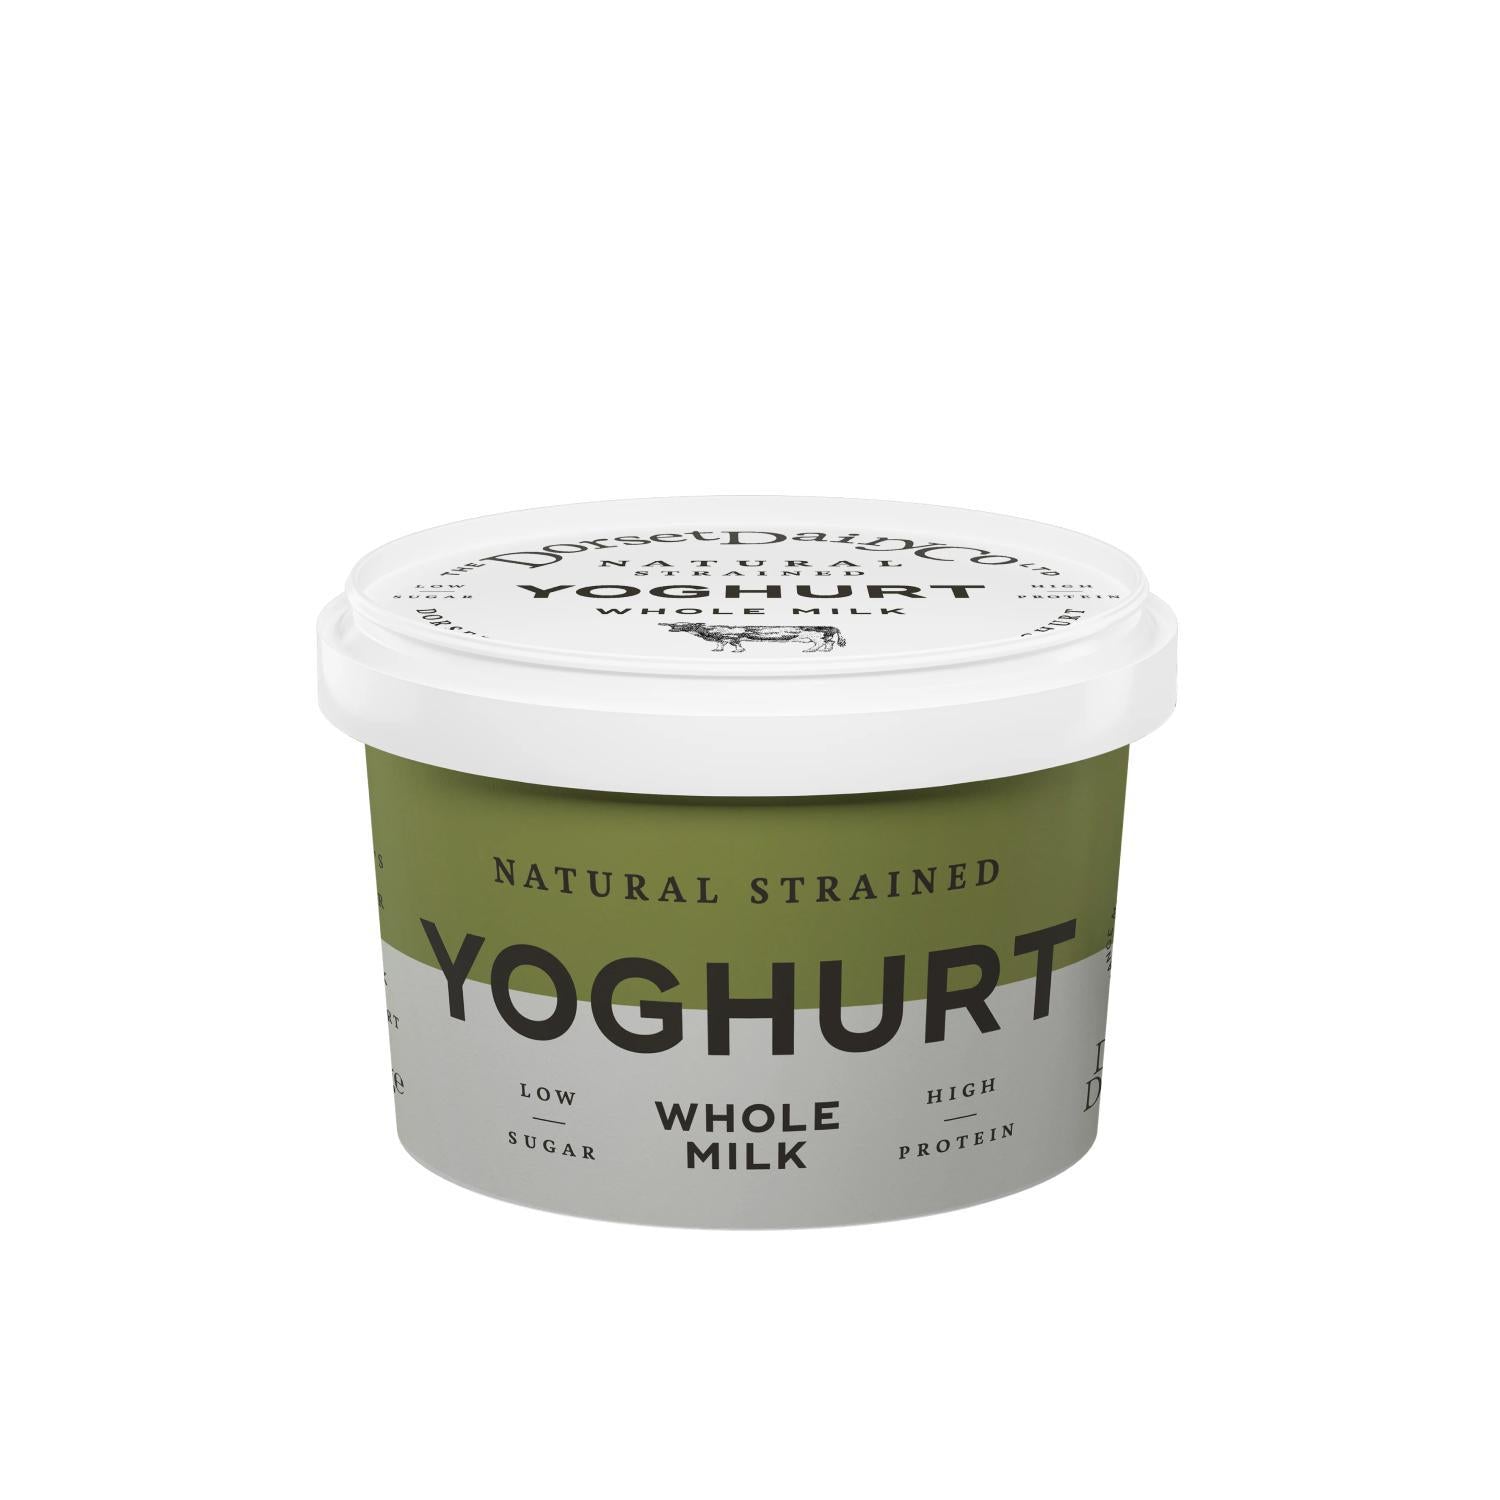 Dorset Dairy - Strained Yoghurt